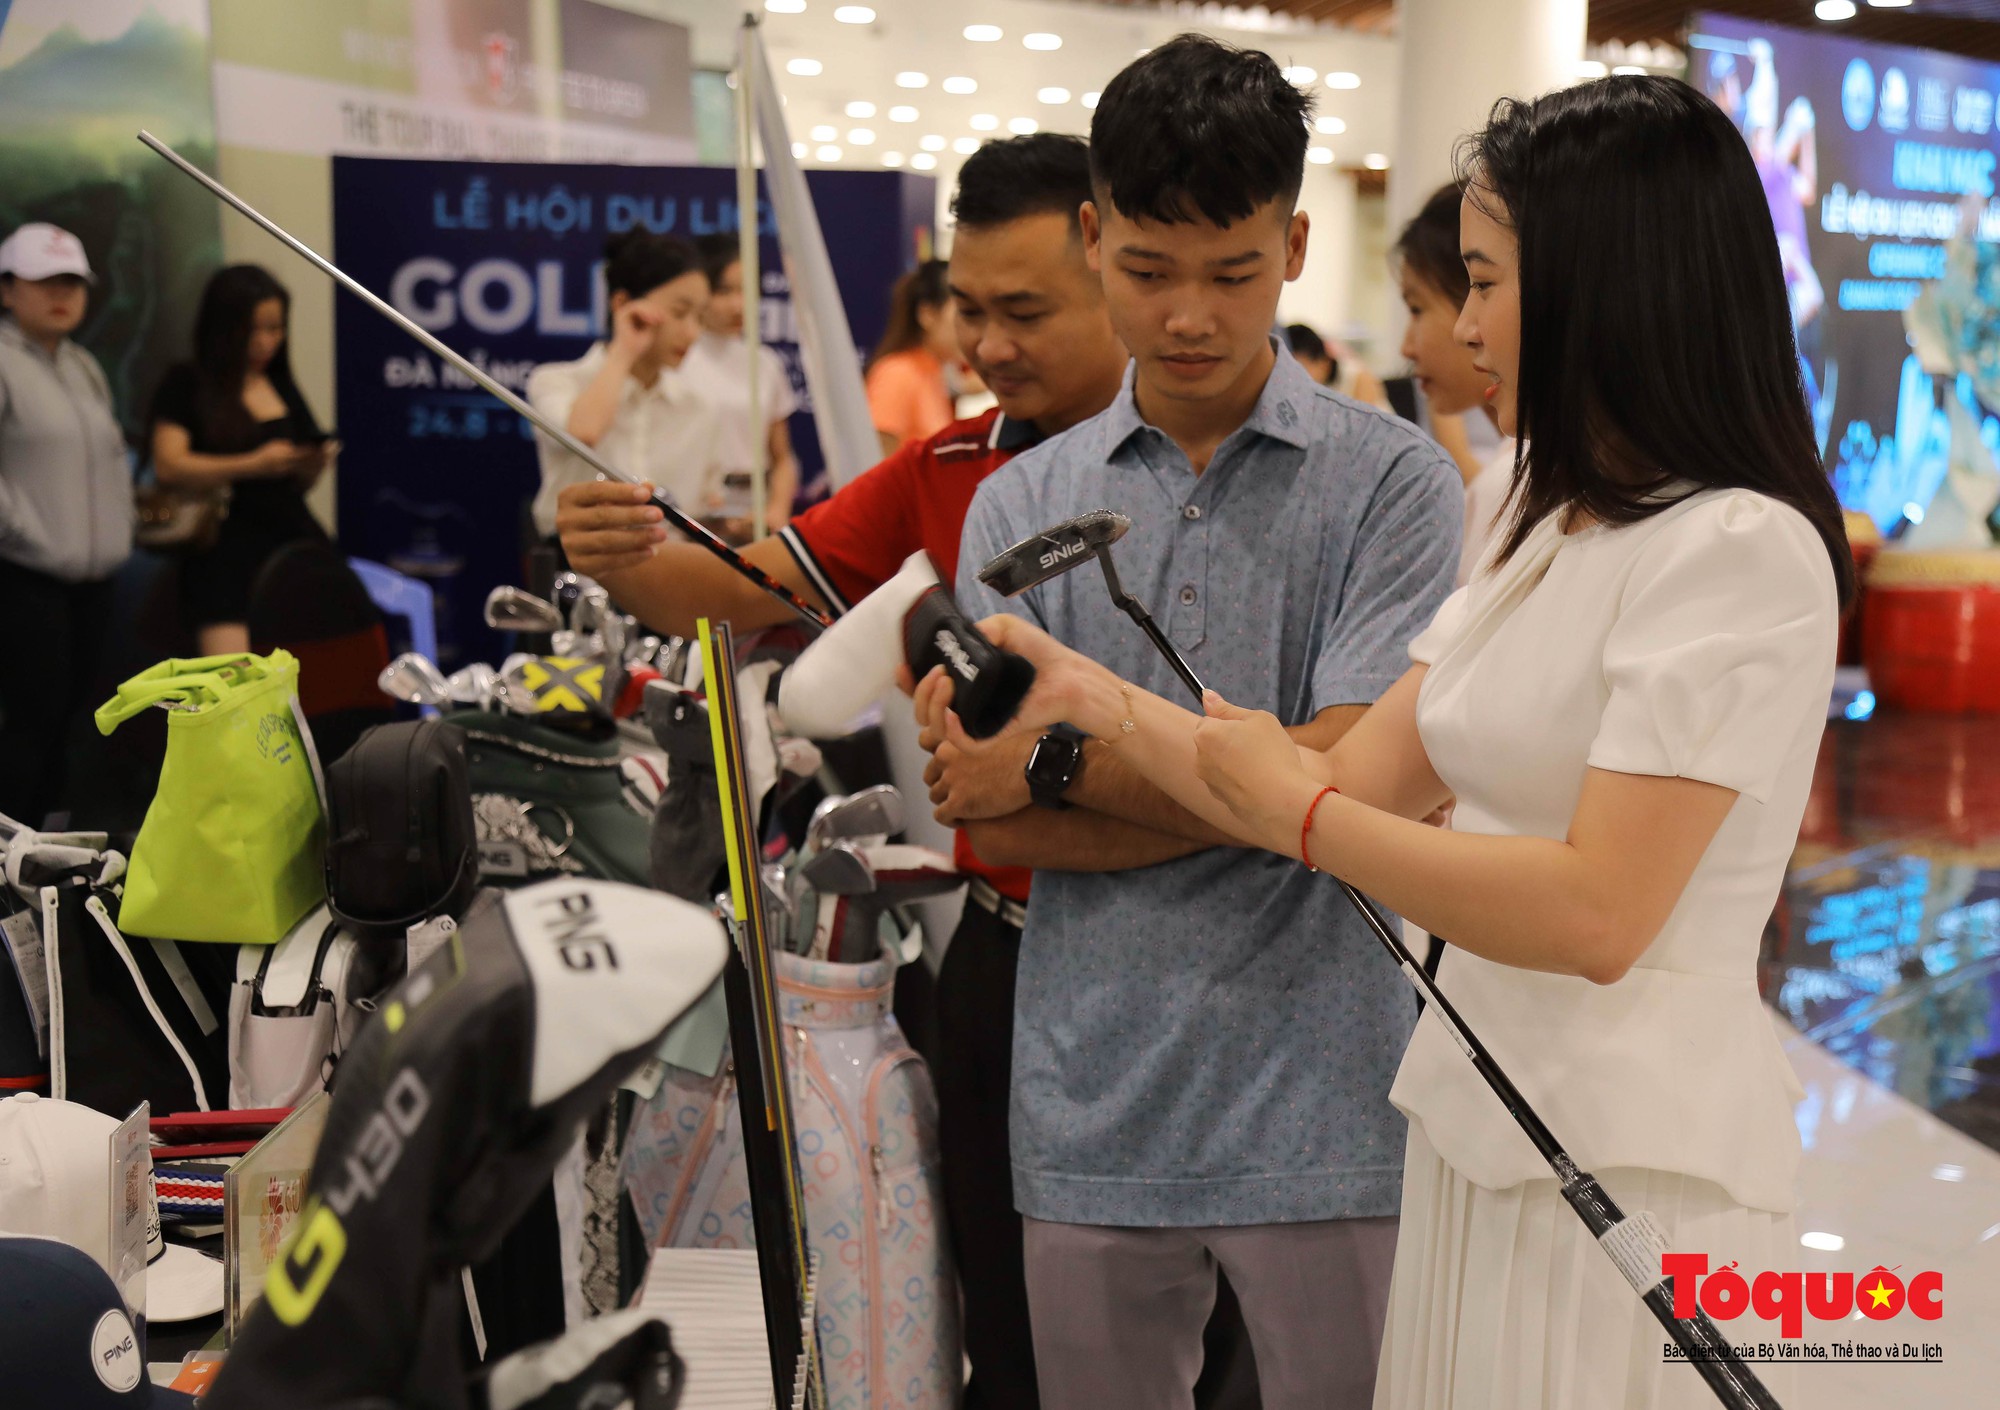 Khai mạc Lễ hội du lịch golf Đà Nẵng 2023 - Ảnh 2.